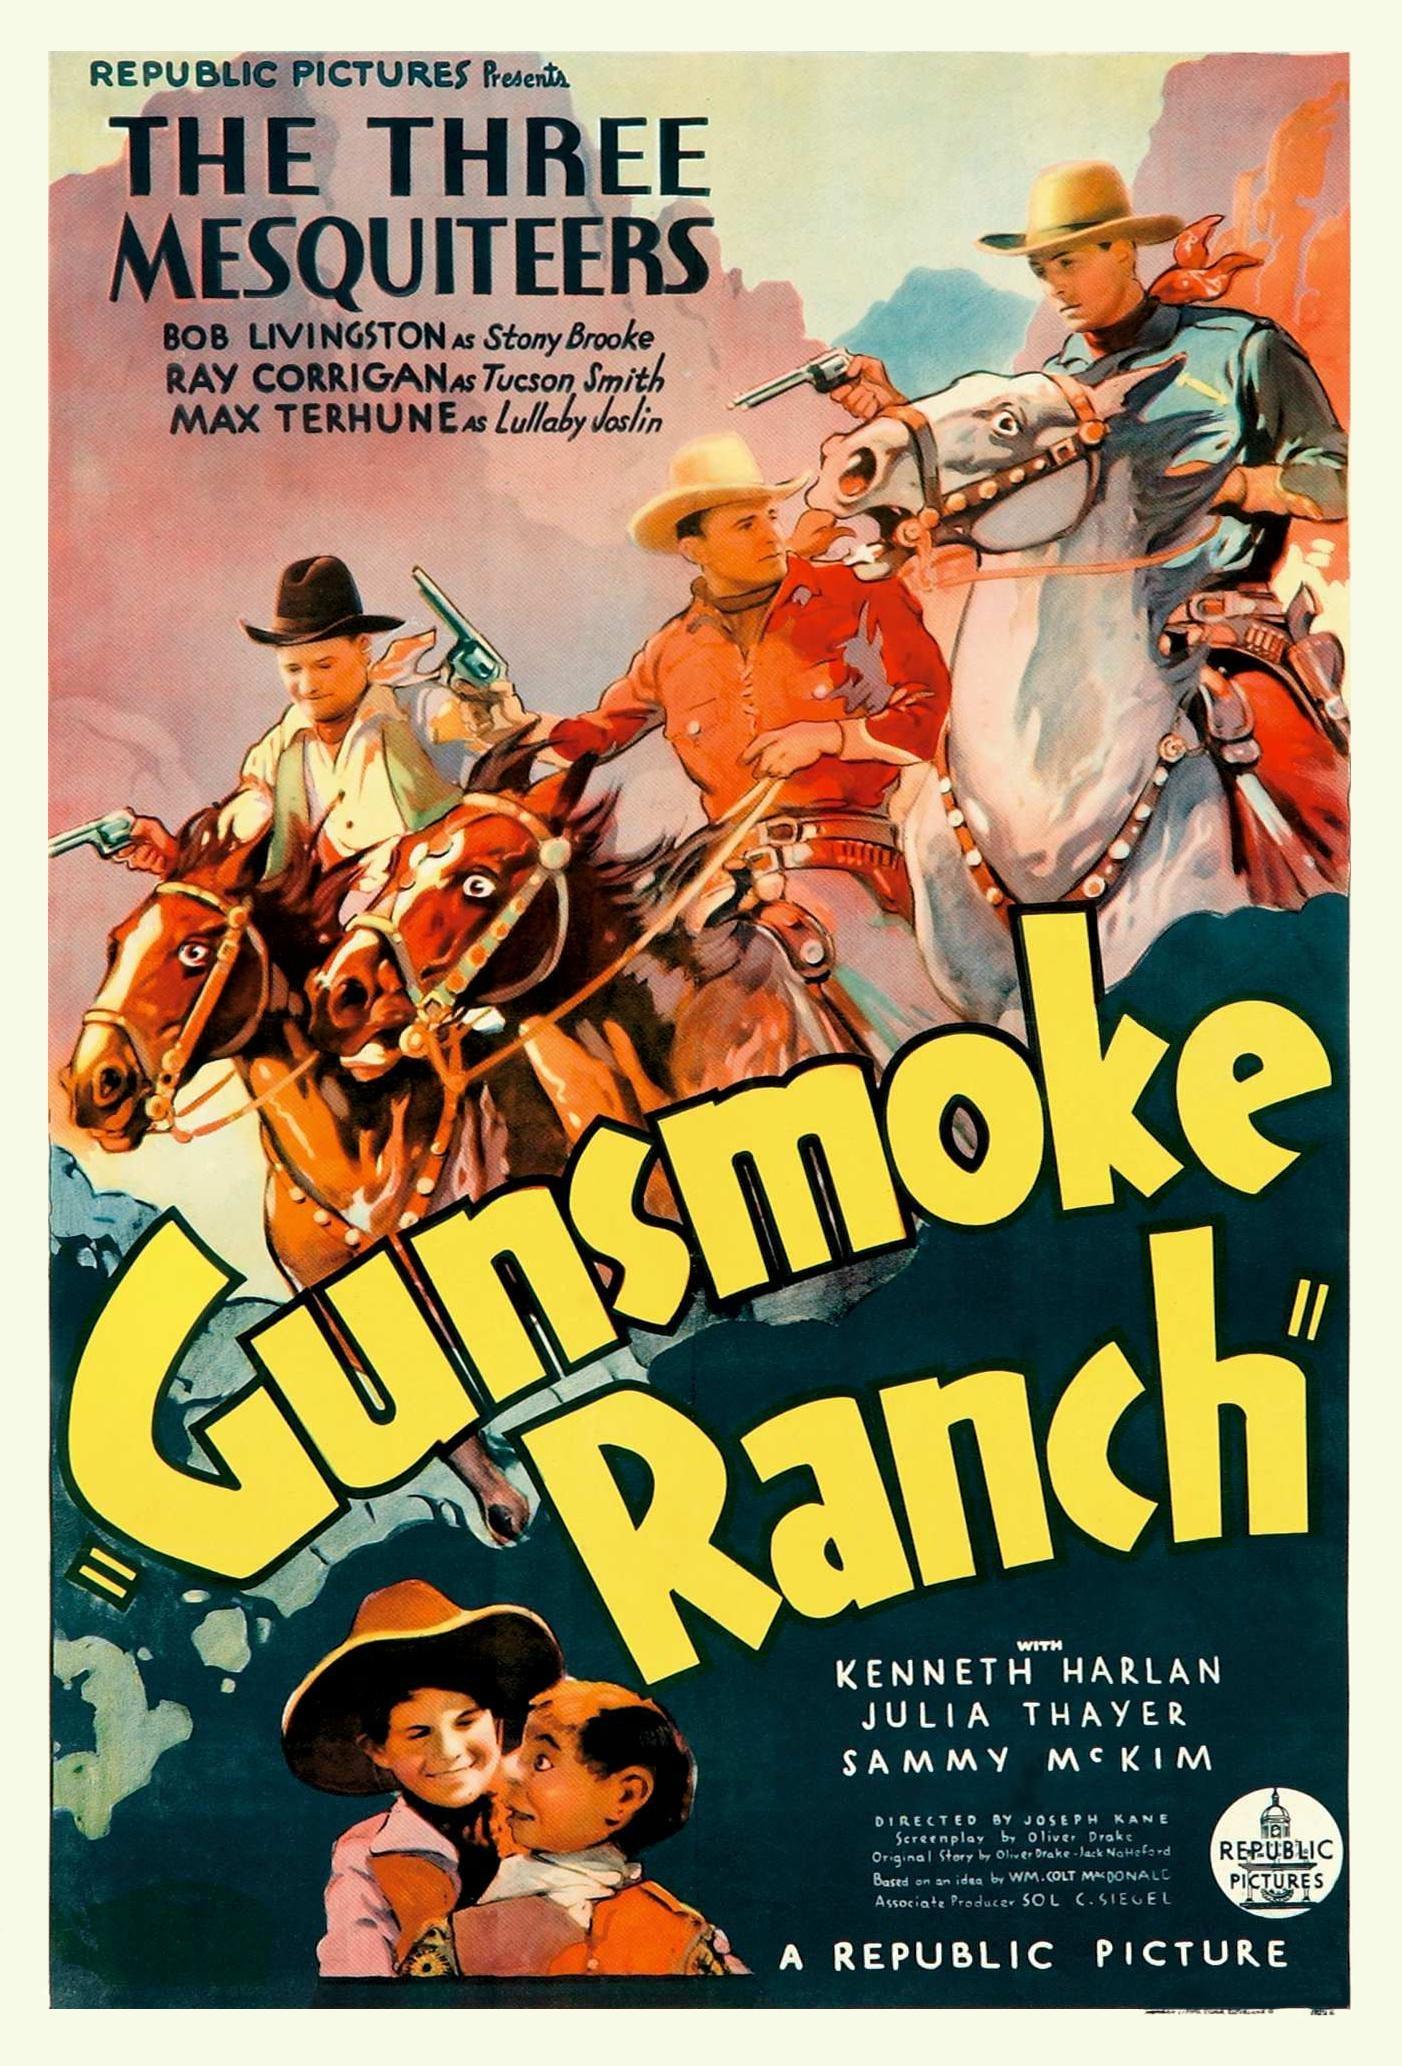 Постер фильма Gunsmoke Ranch